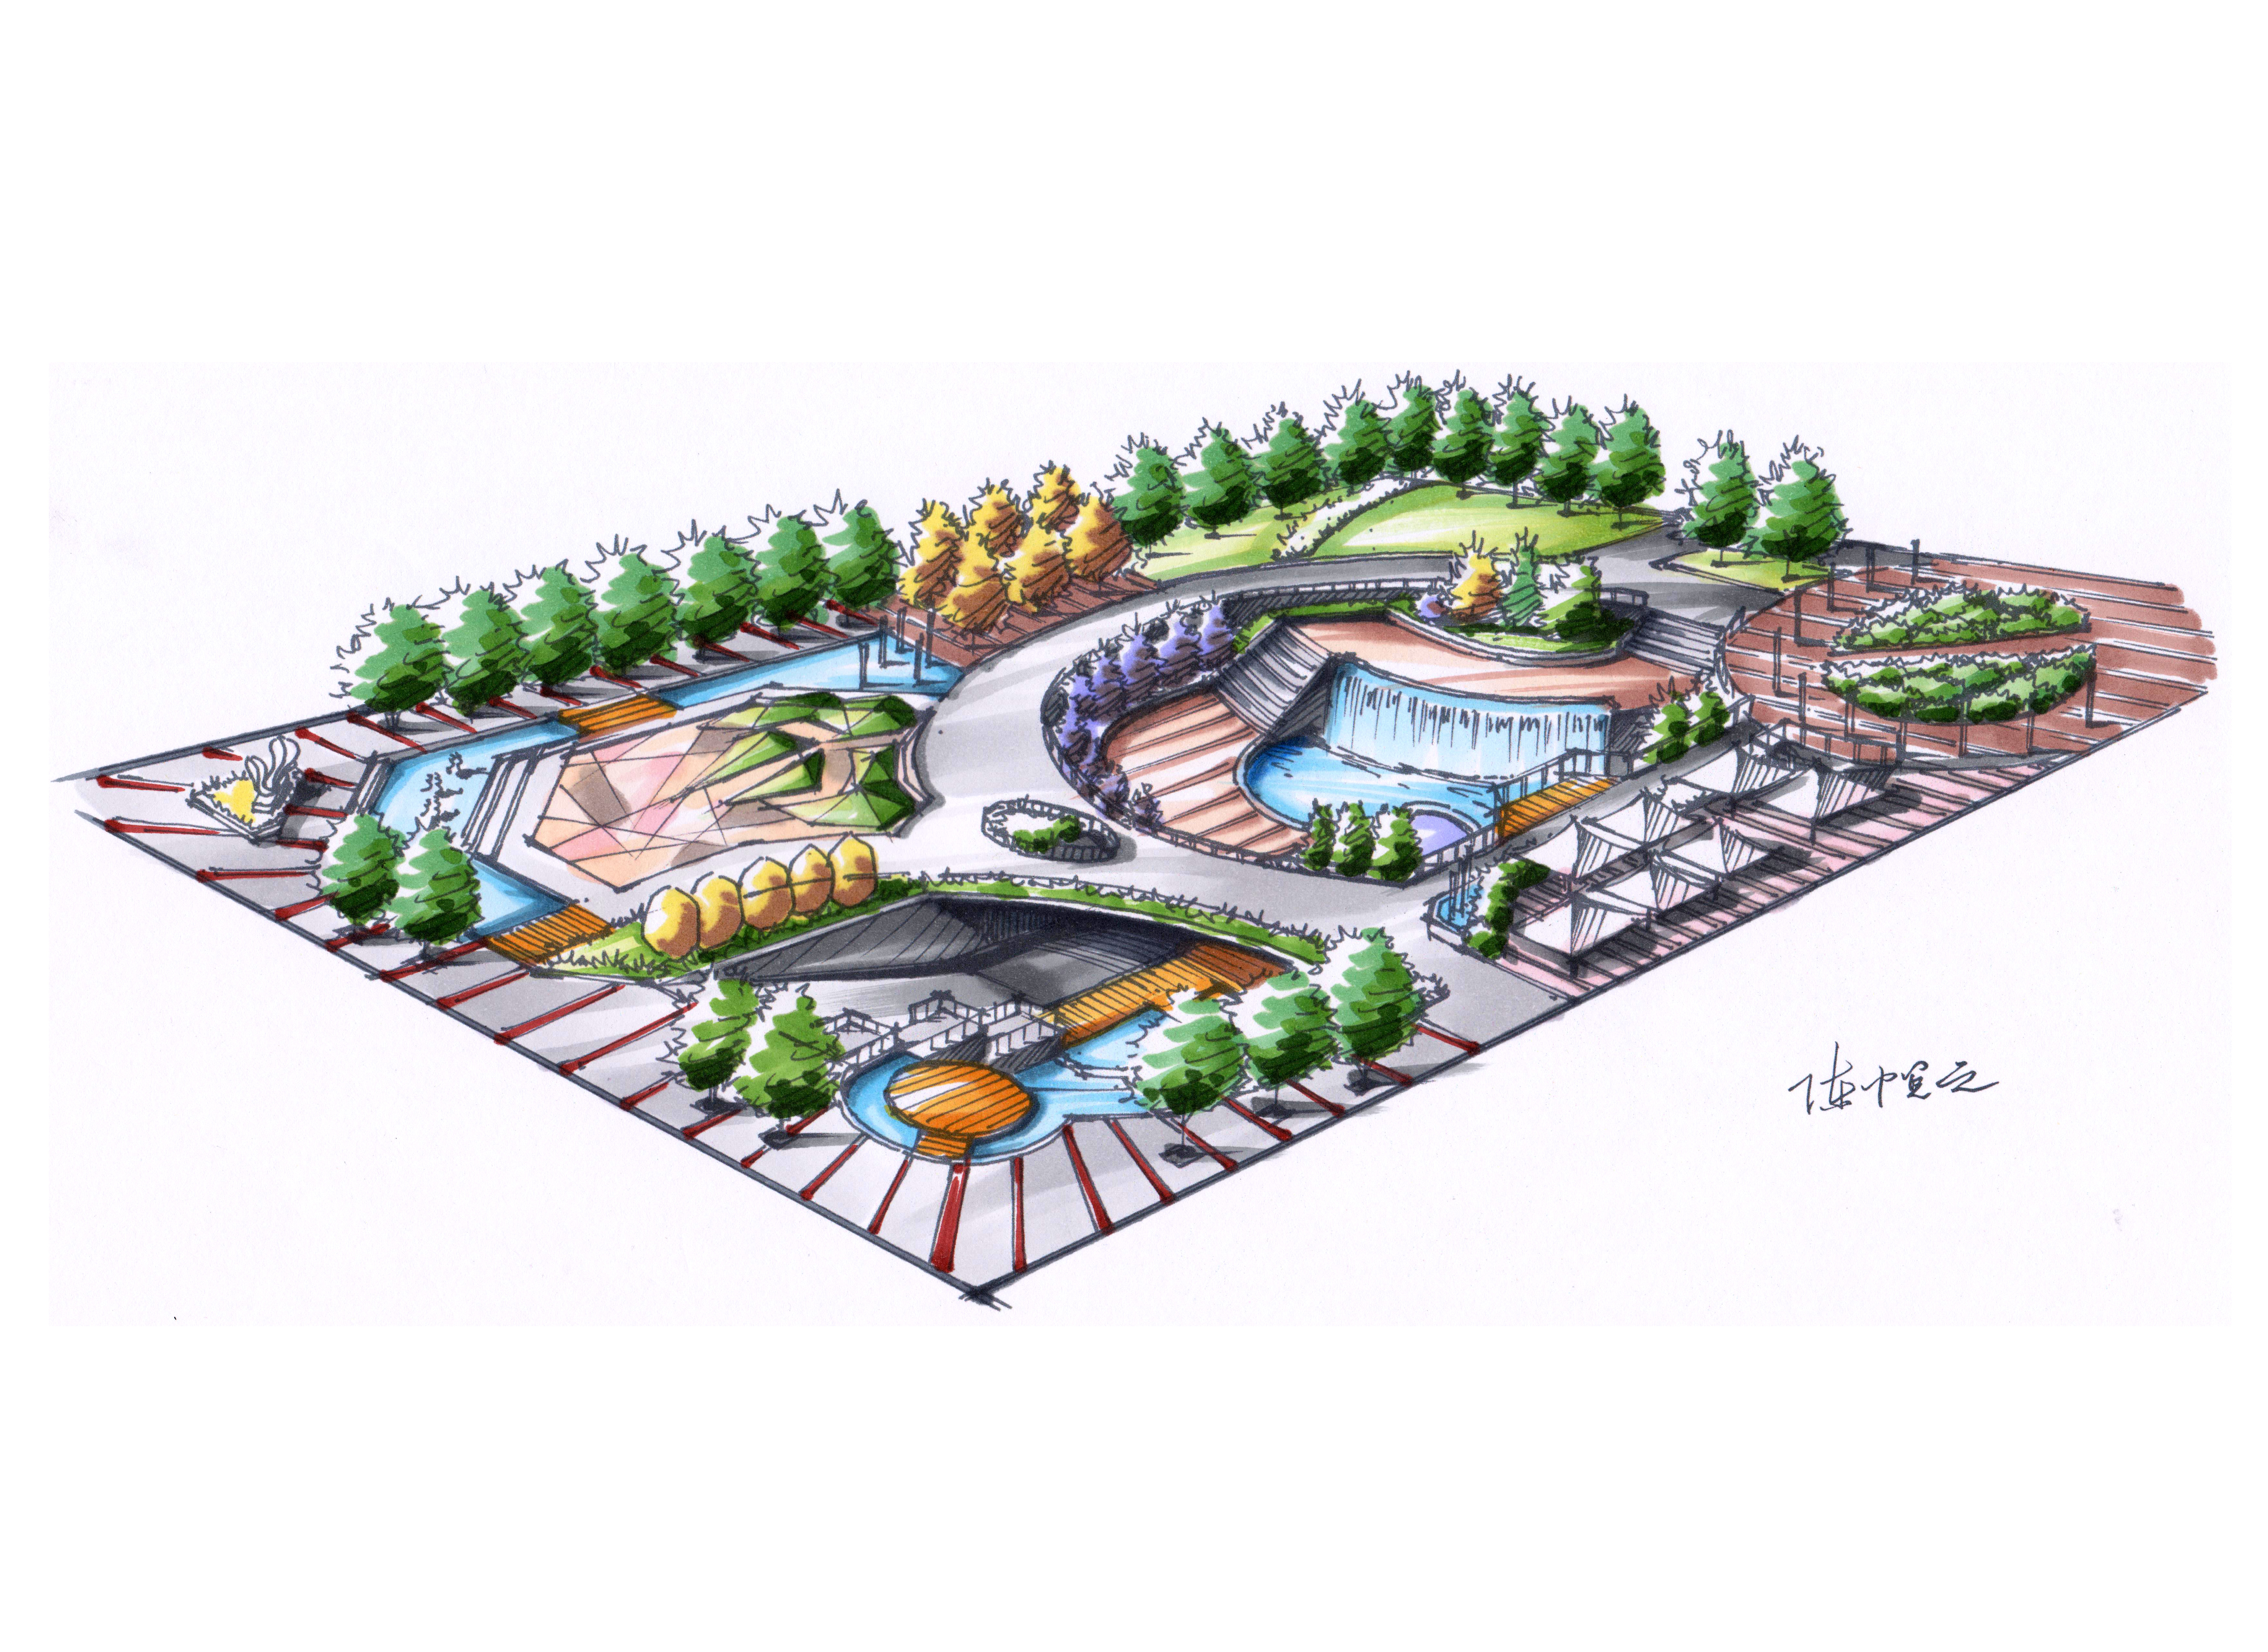 【天津手绘】历史文化广场景观设计手绘